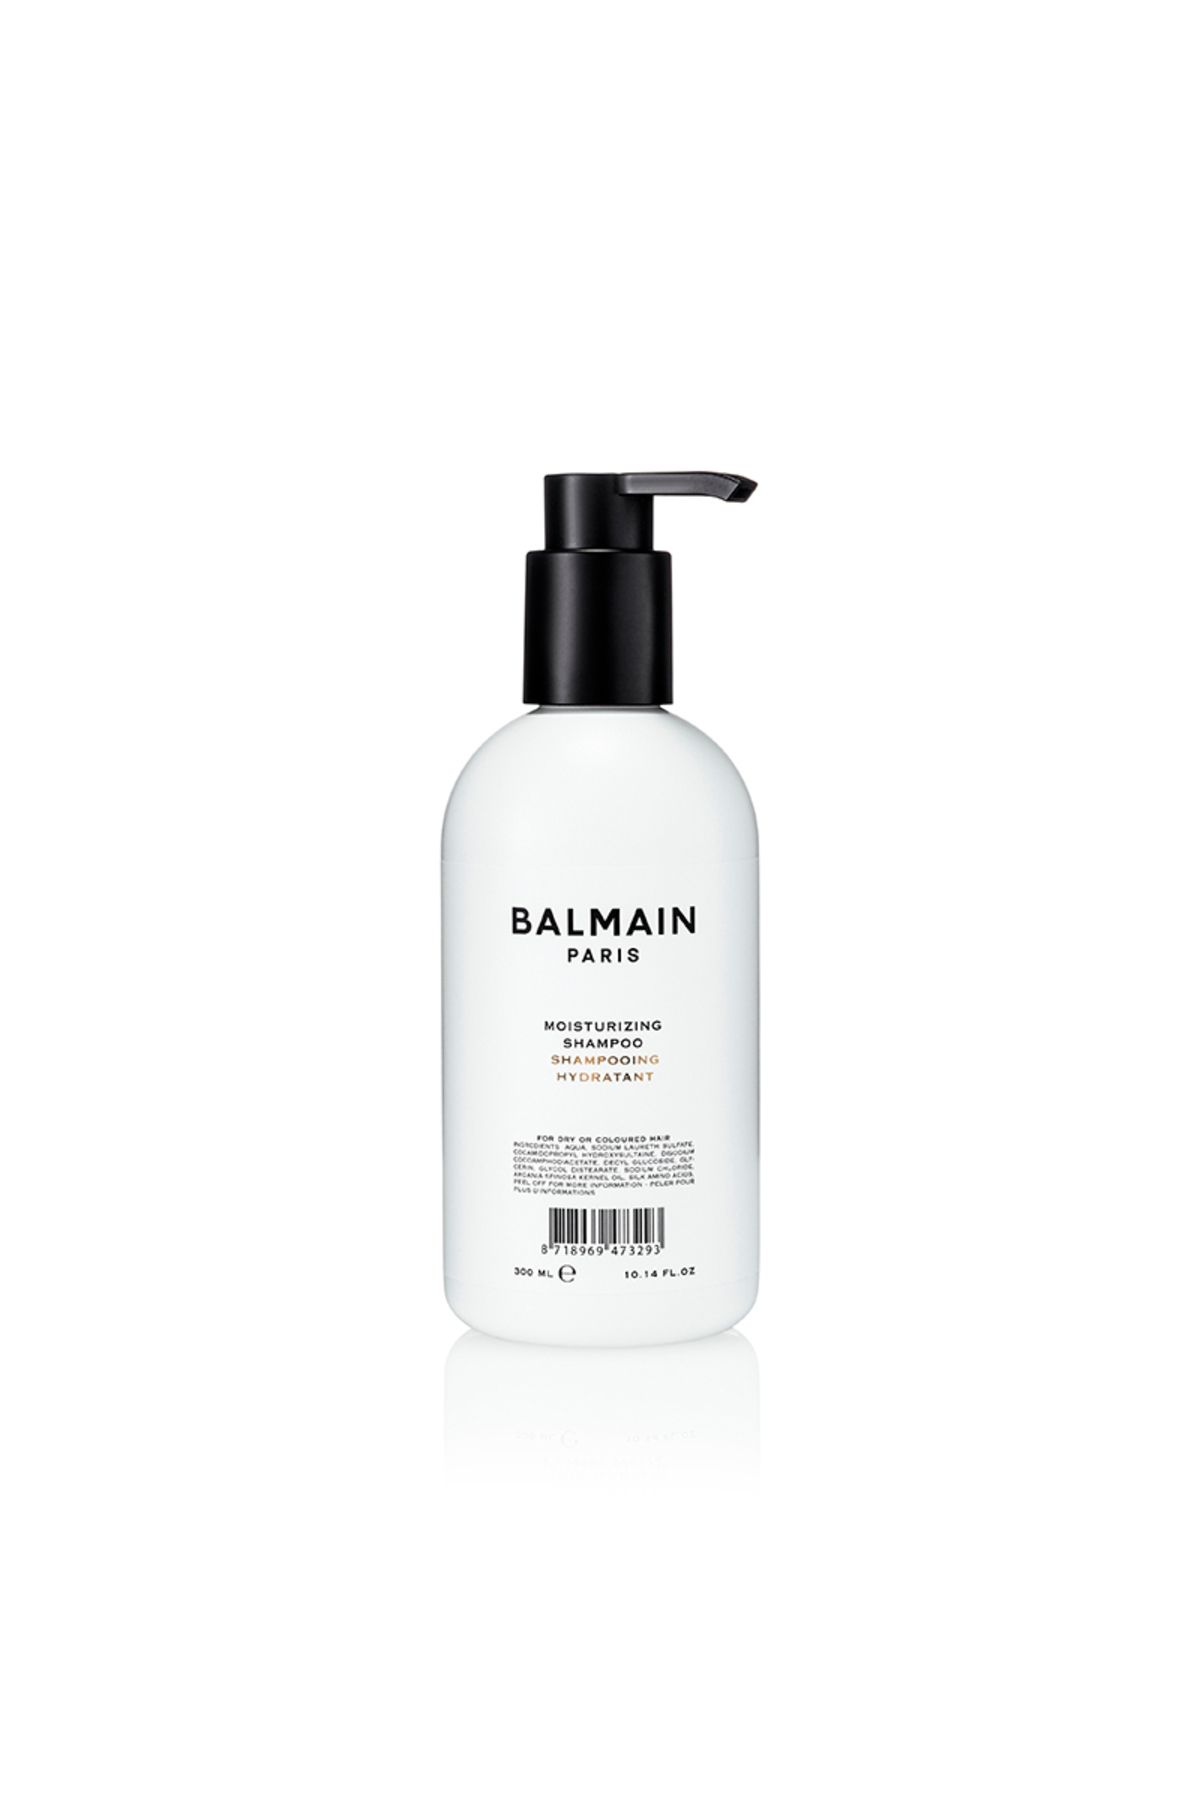 BALMAIN Kuru Saçlar Için Nemlendirici Şampuan - Moisturizing Shampoo 300ml